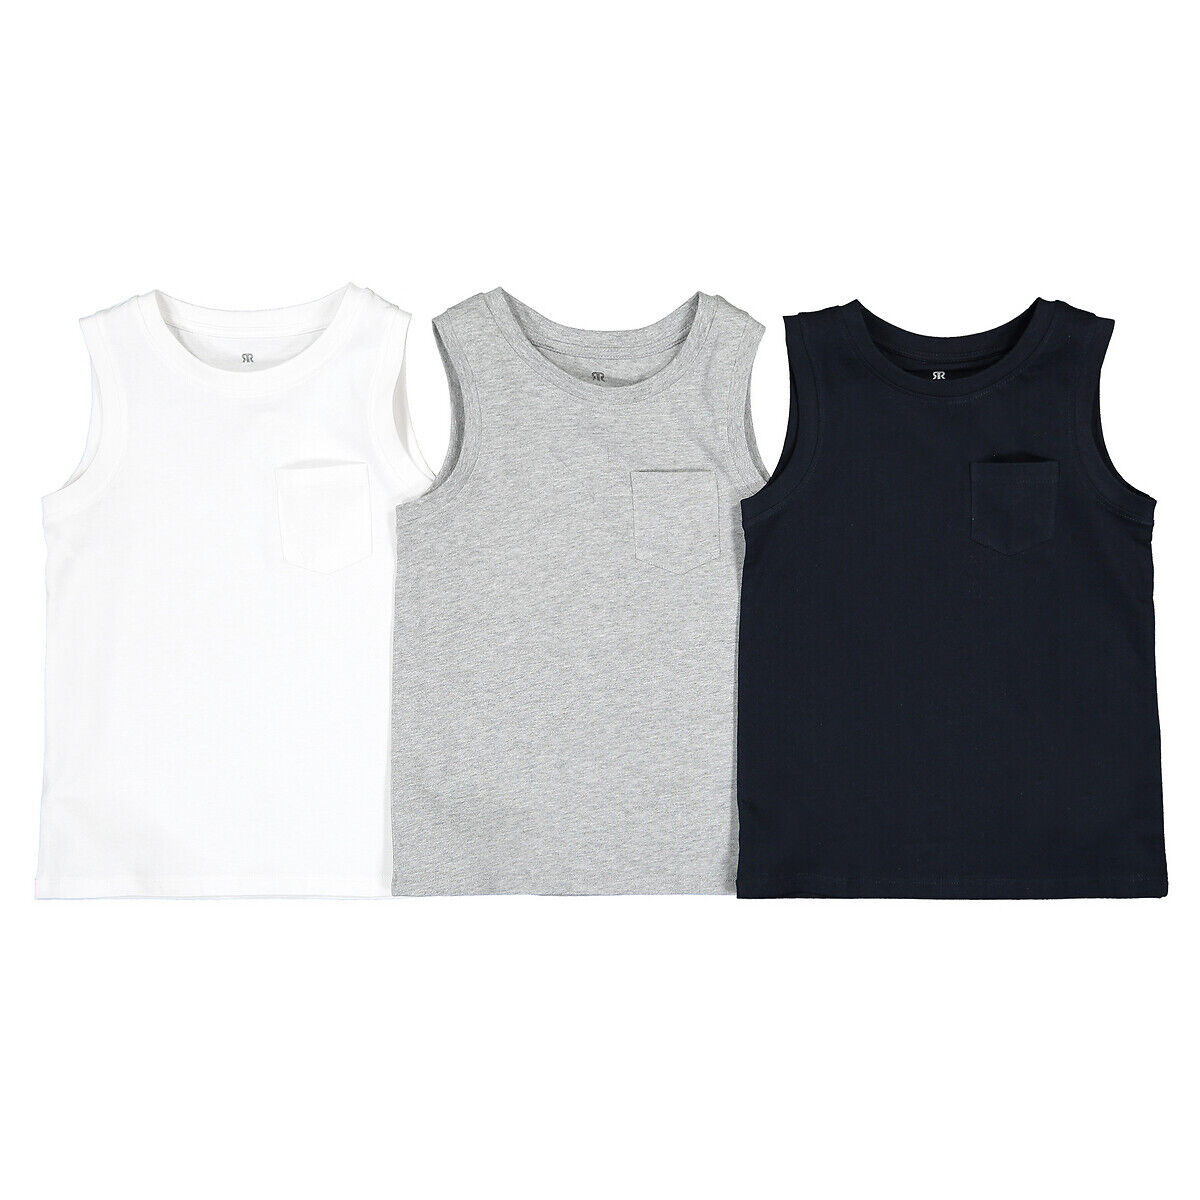 La Redoute Collections Lote de 3 camisolas de cavas lisas, em algodão bio, 3-14 anos   Marinho + cinza mesclado + branco